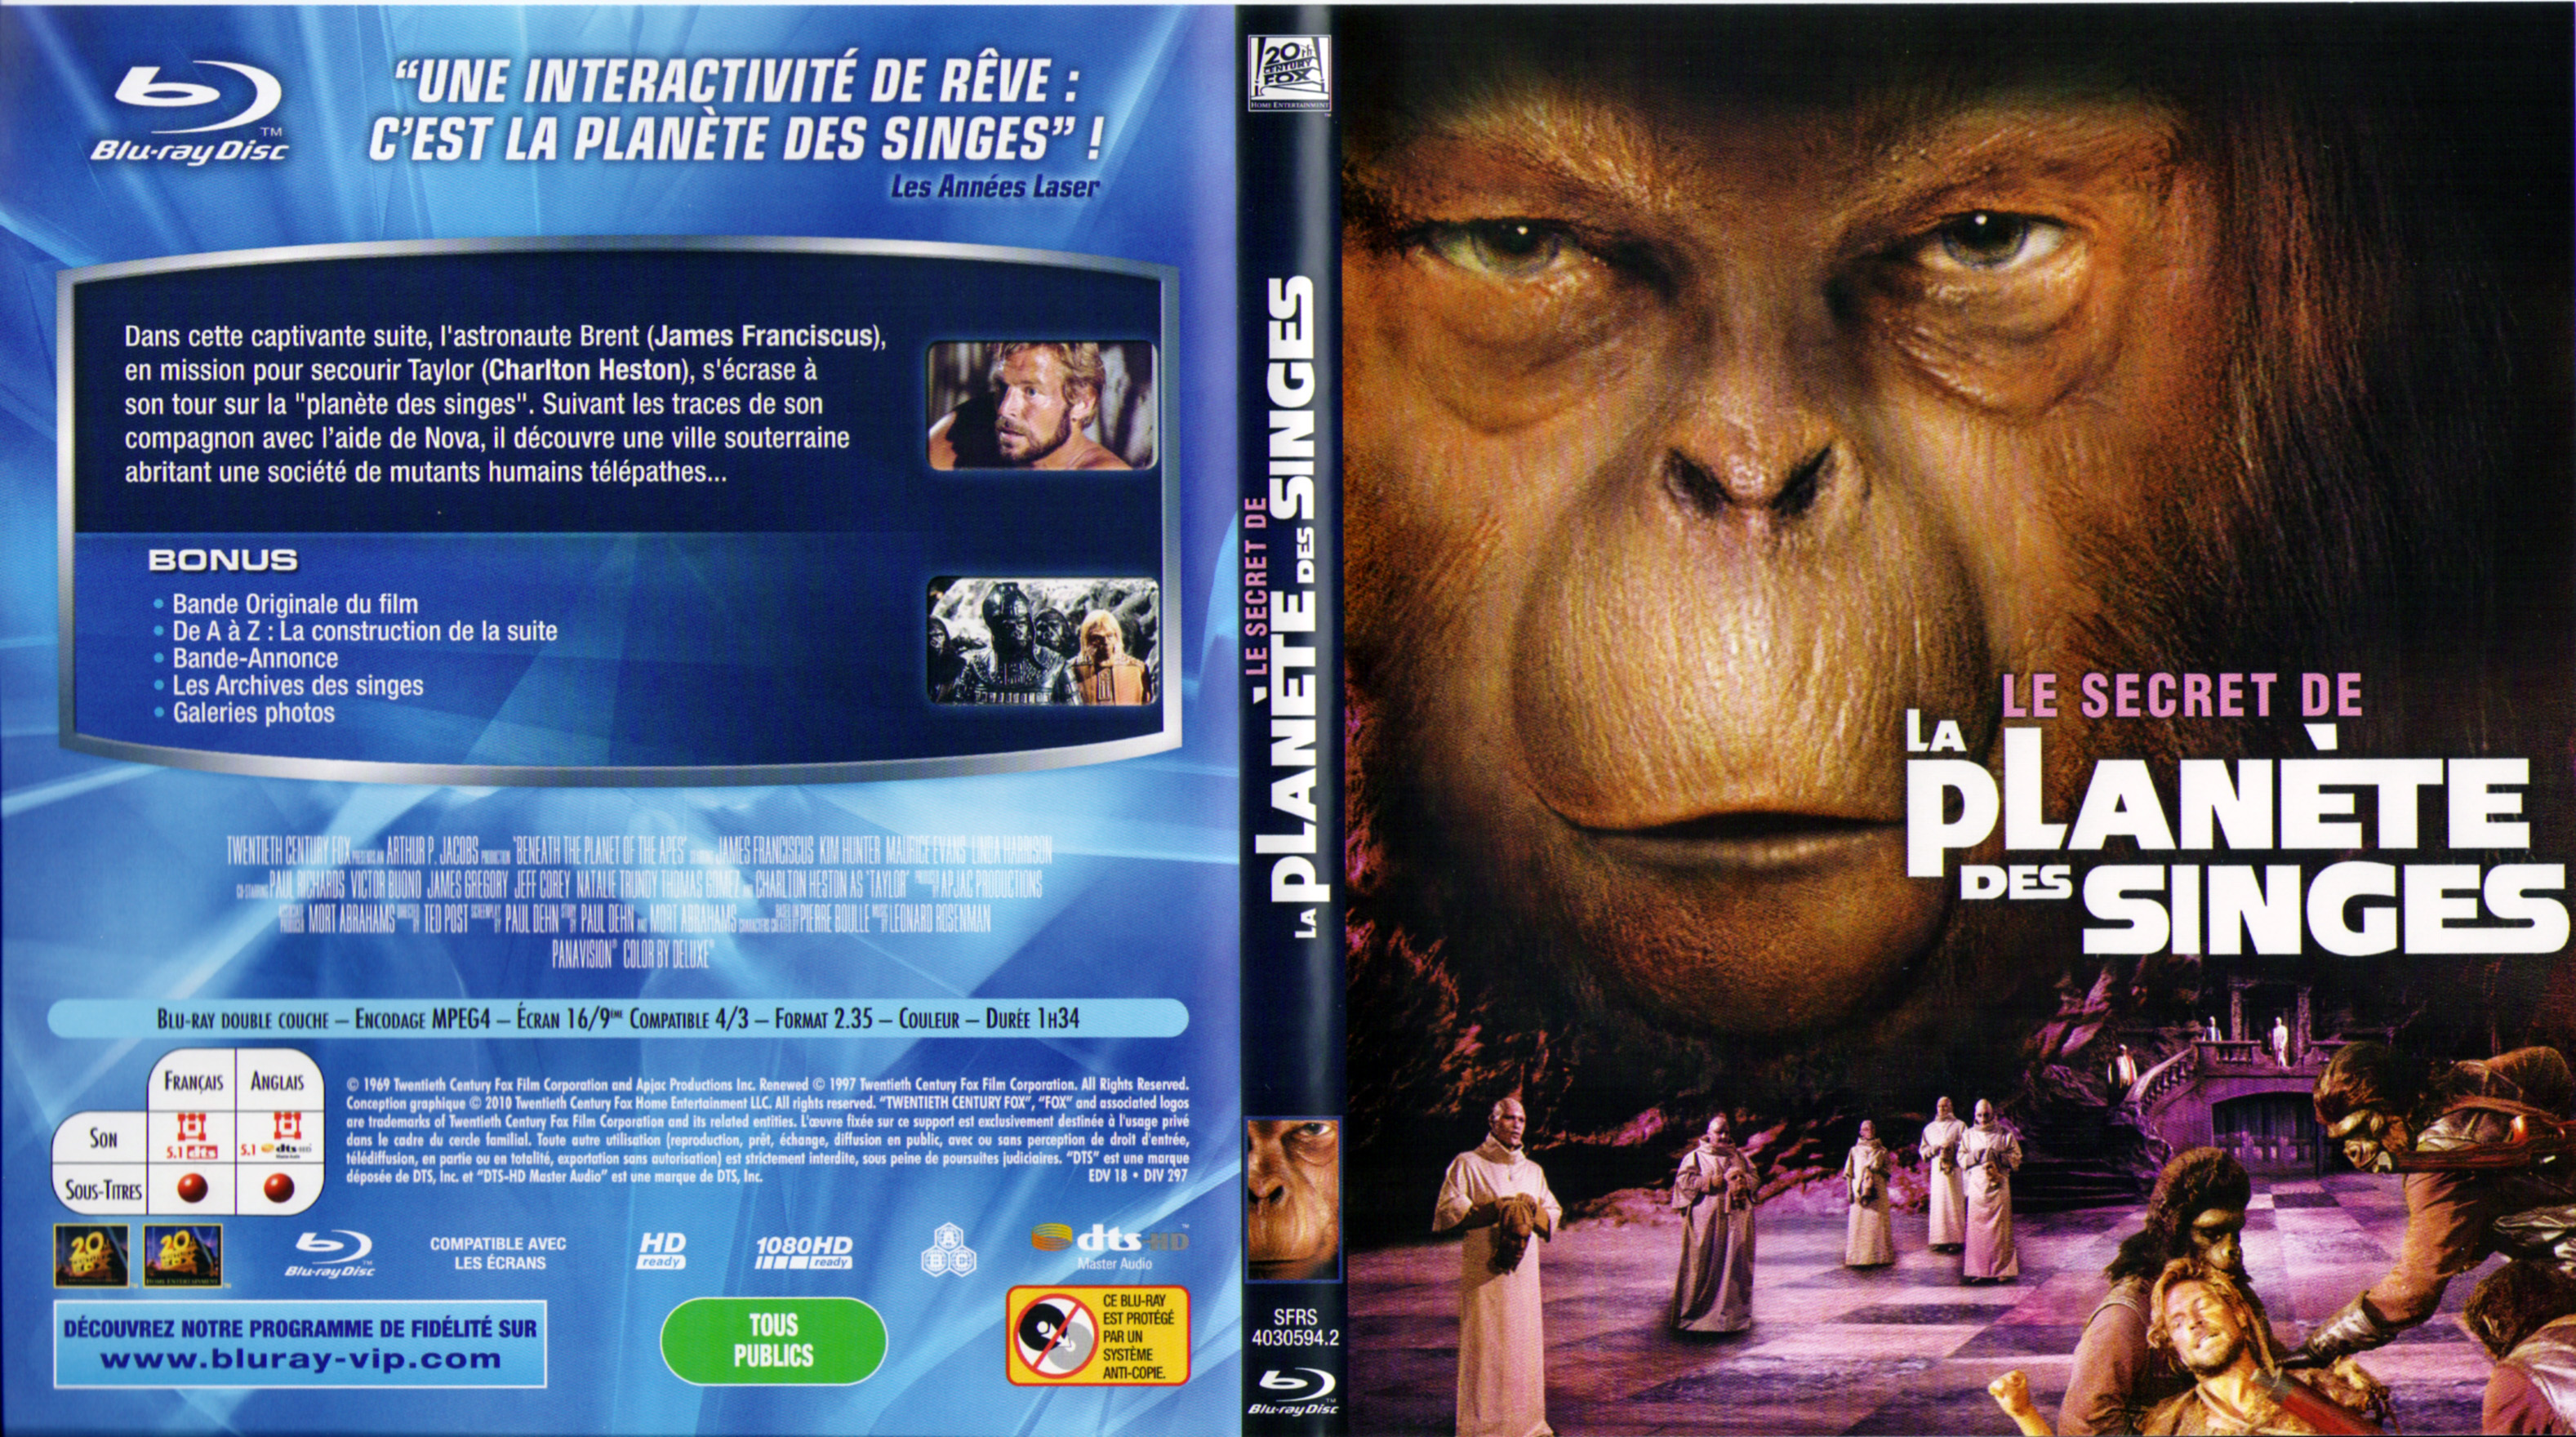 Jaquette DVD Le secret de la planete des singes (BLU-RAY)